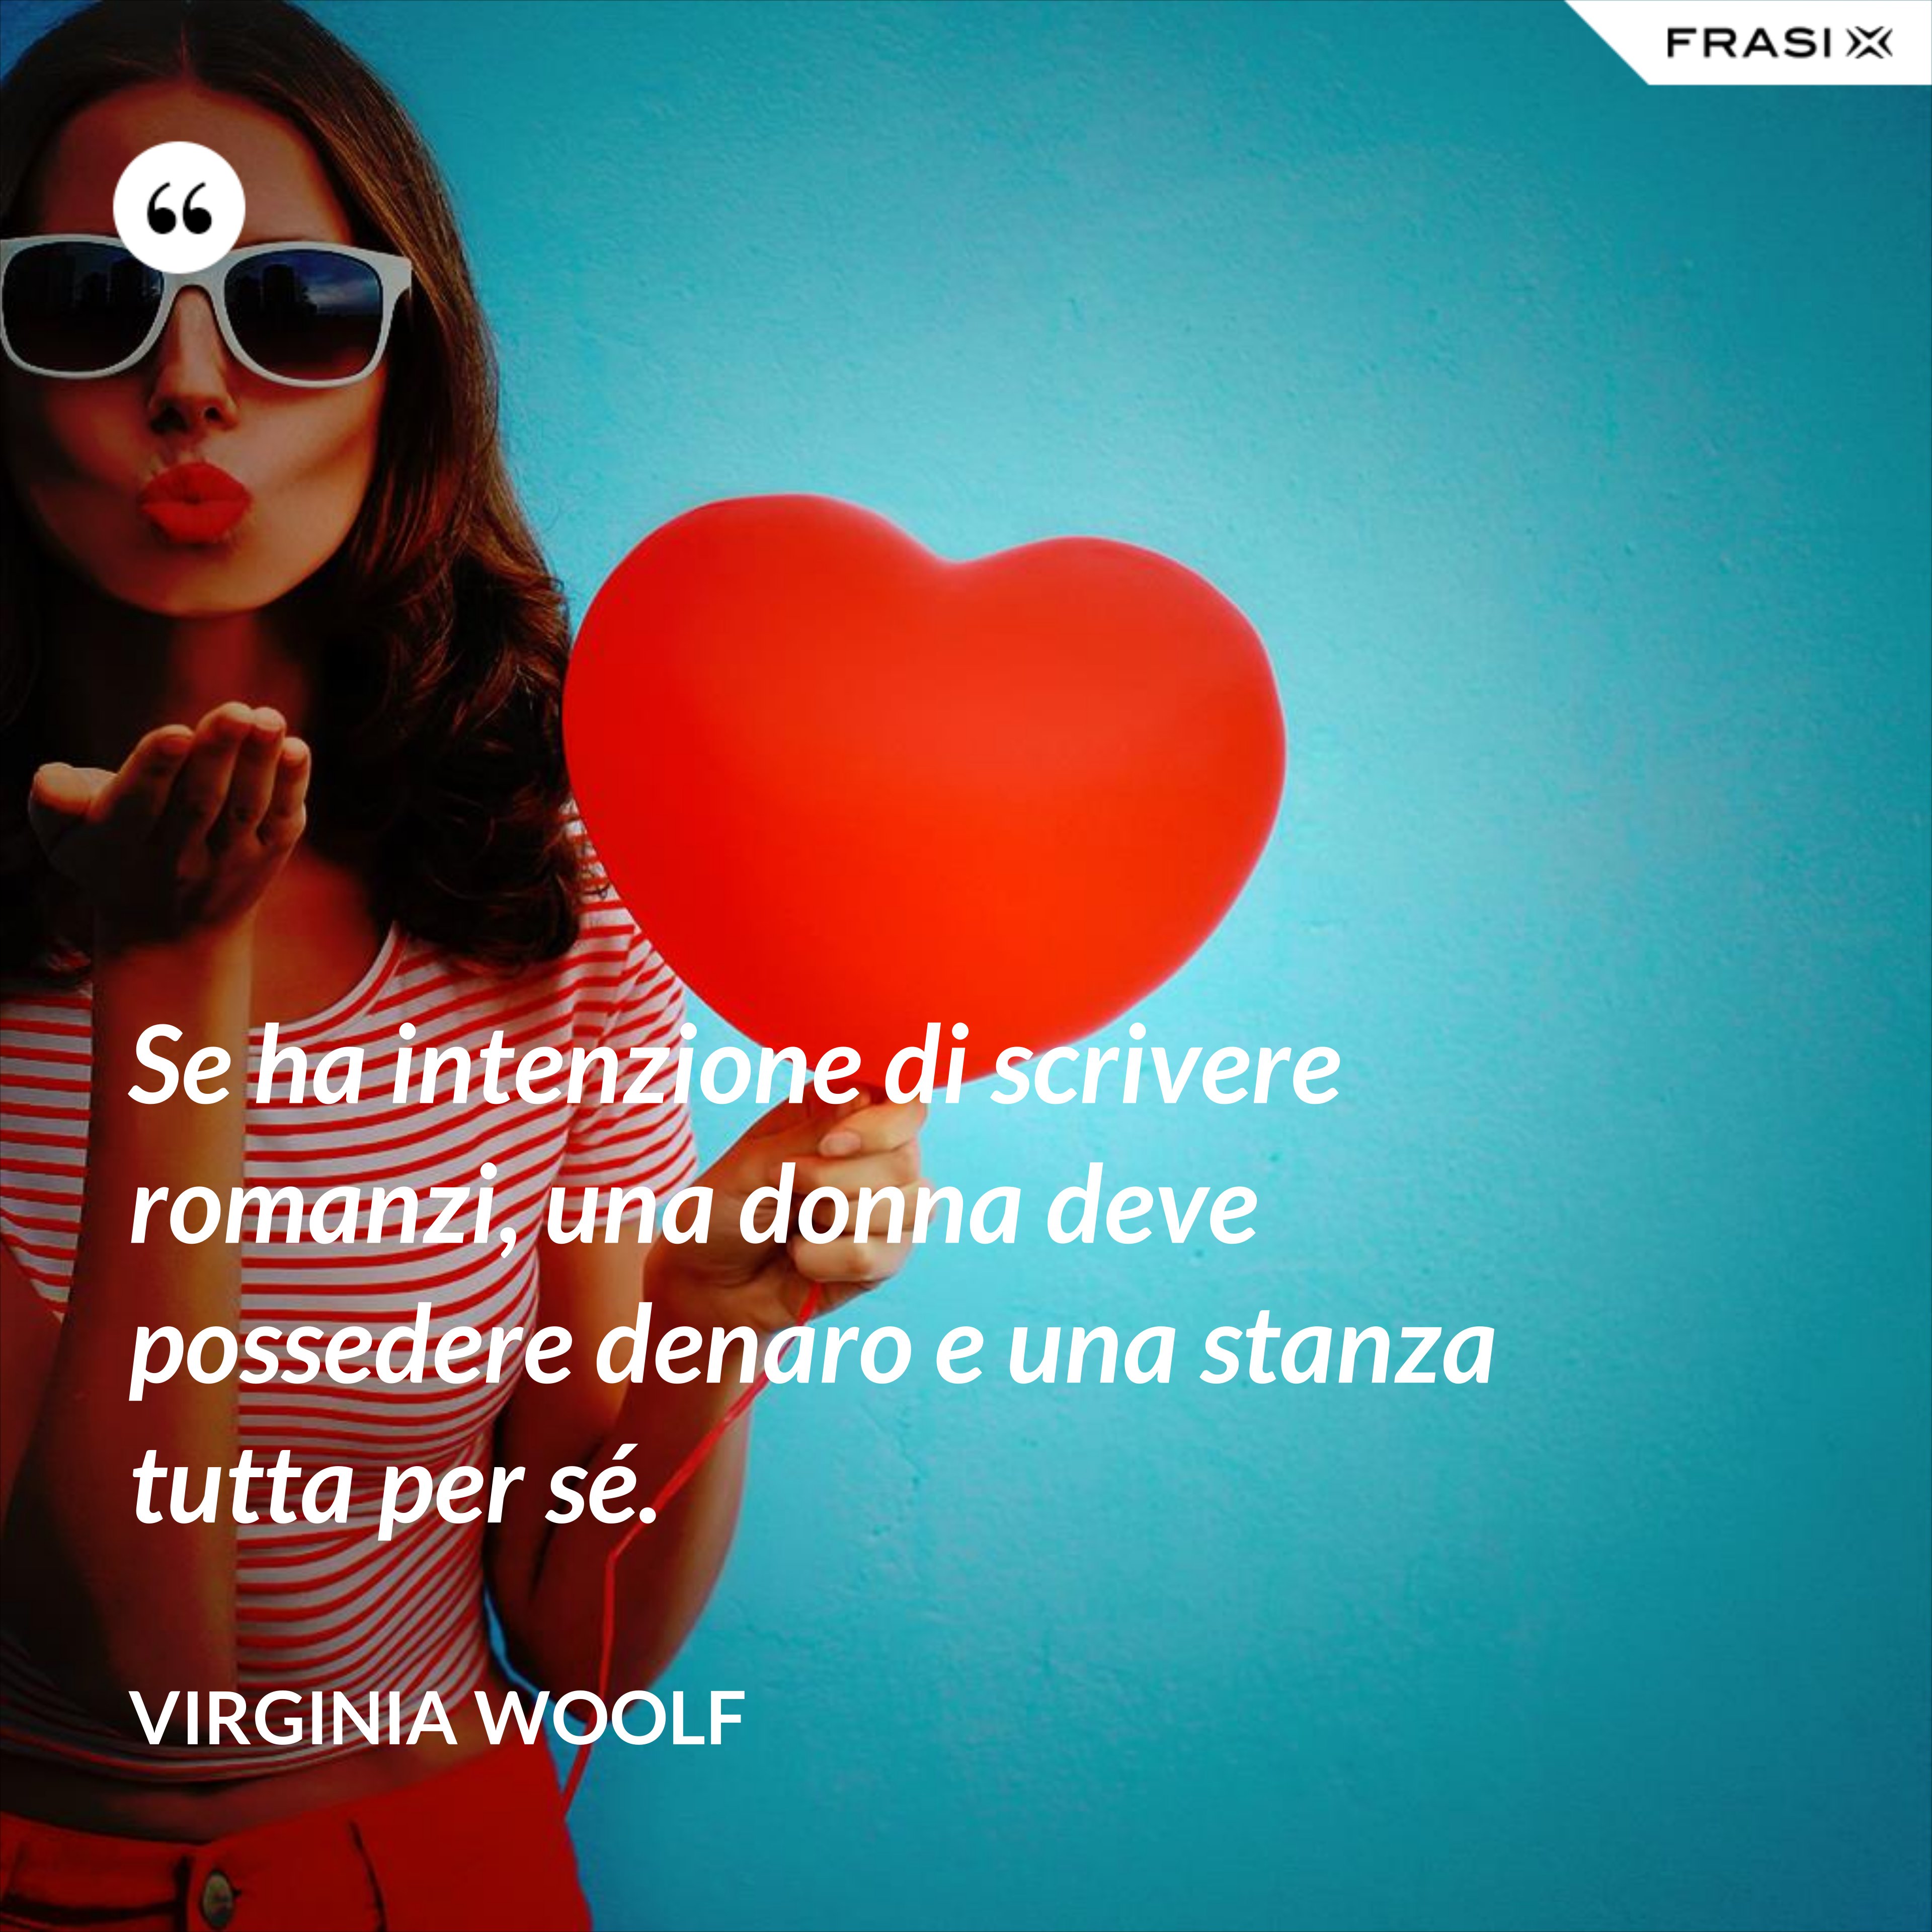 Se ha intenzione di scrivere romanzi, una donna deve possedere denaro e una stanza tutta per sé. - Virginia Woolf